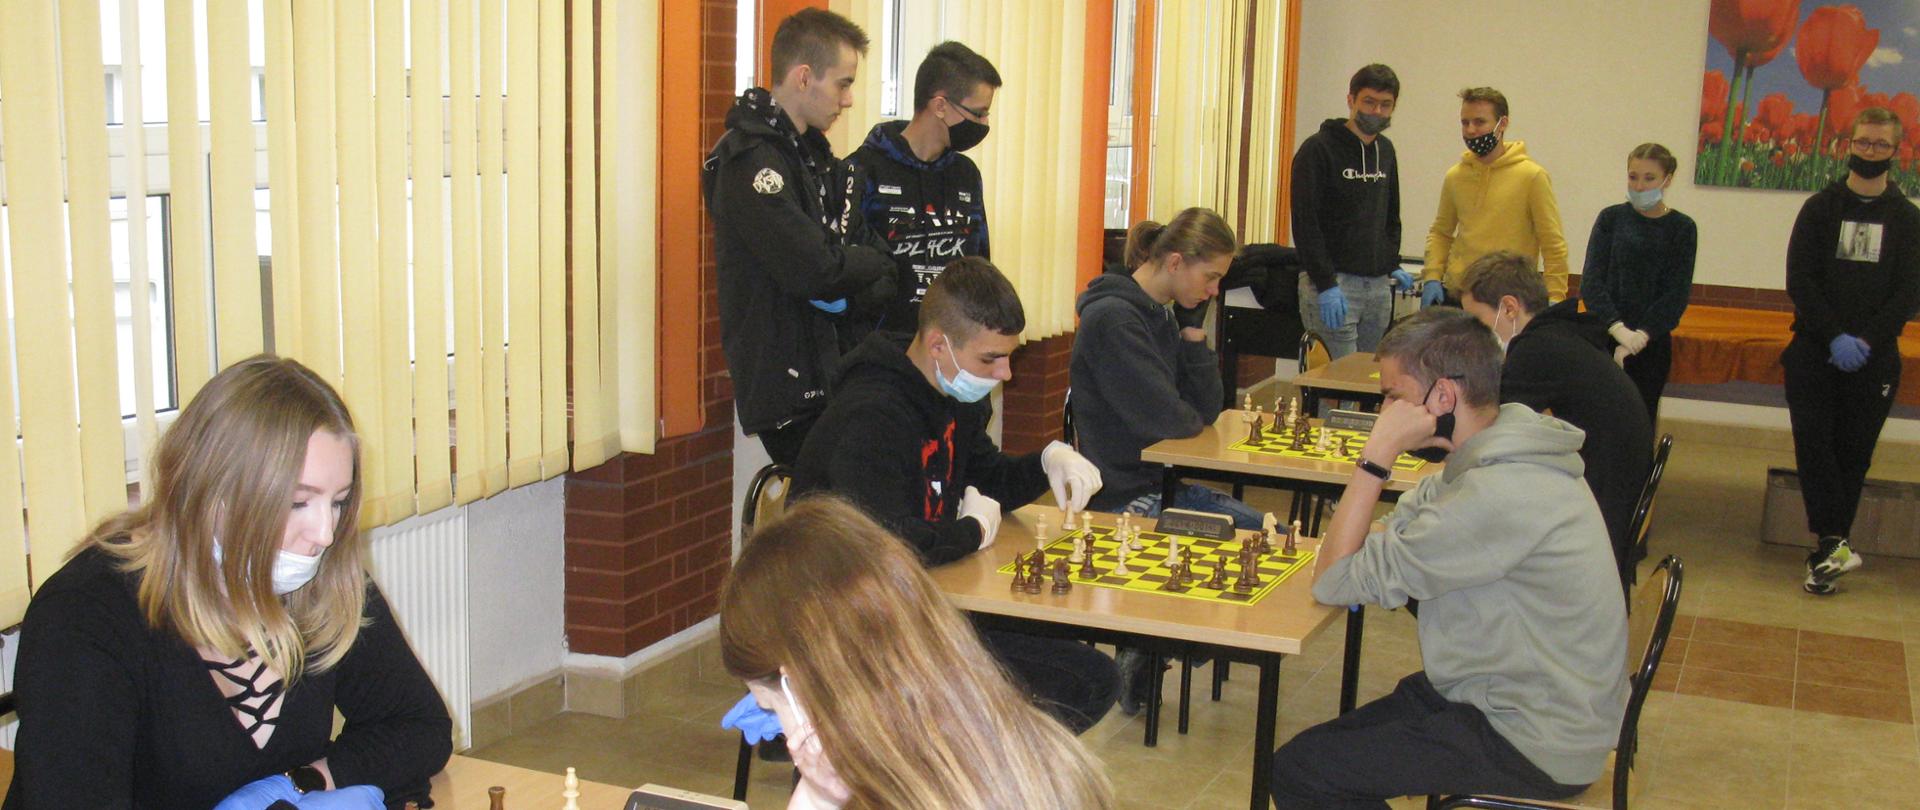 Na zdjęciu młodzież szkolna podczas rozgrywek szachowych